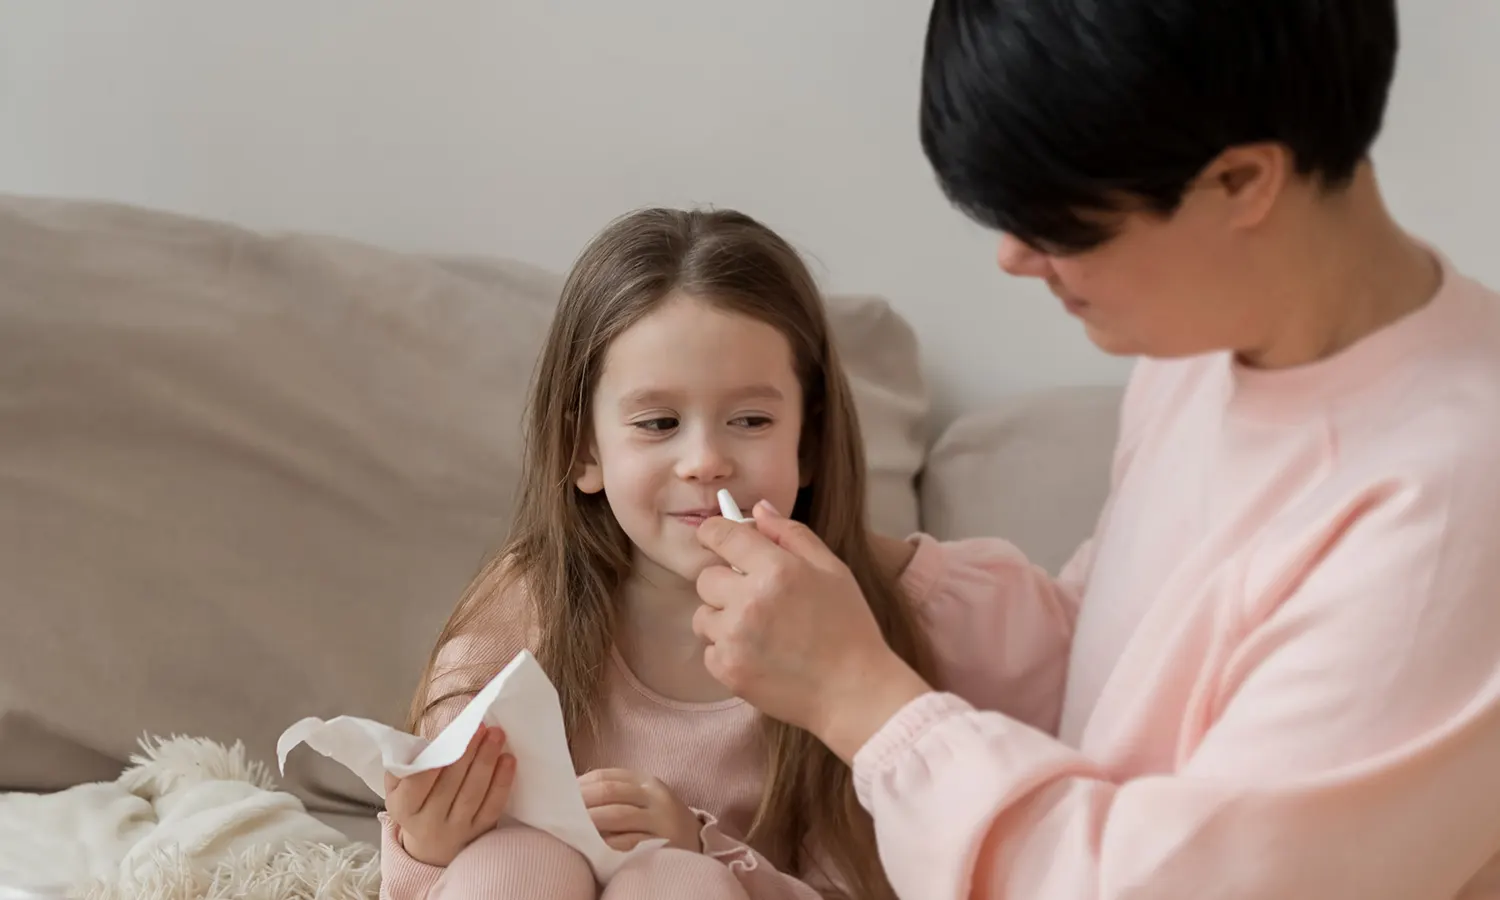 Nueva vacuna intranasal de la gripe para niños, disponible en farmacias